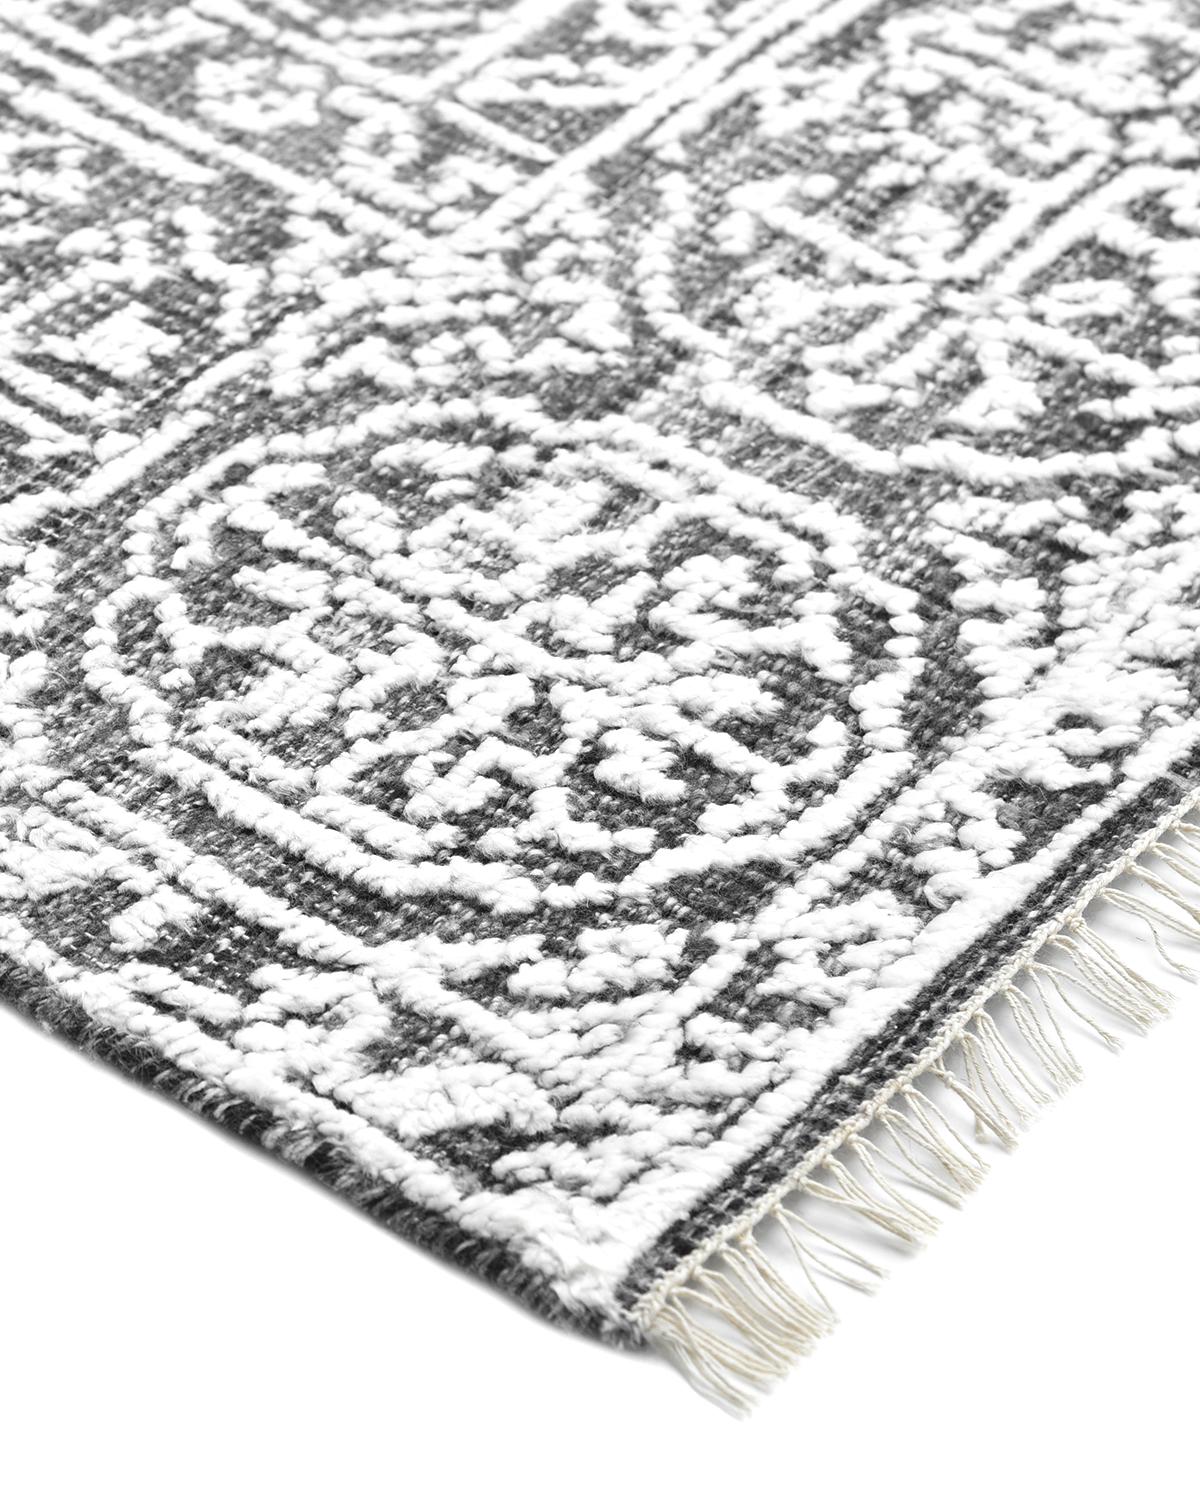 Faisant le lien entre le traditionnel et le moderne, la collection Transitional propose des tapis qui illustrent la polyvalence. Ils intègrent à la fois des motifs traditionnels et des couleurs contemporaines grâce à des teintures botaniques 100 %